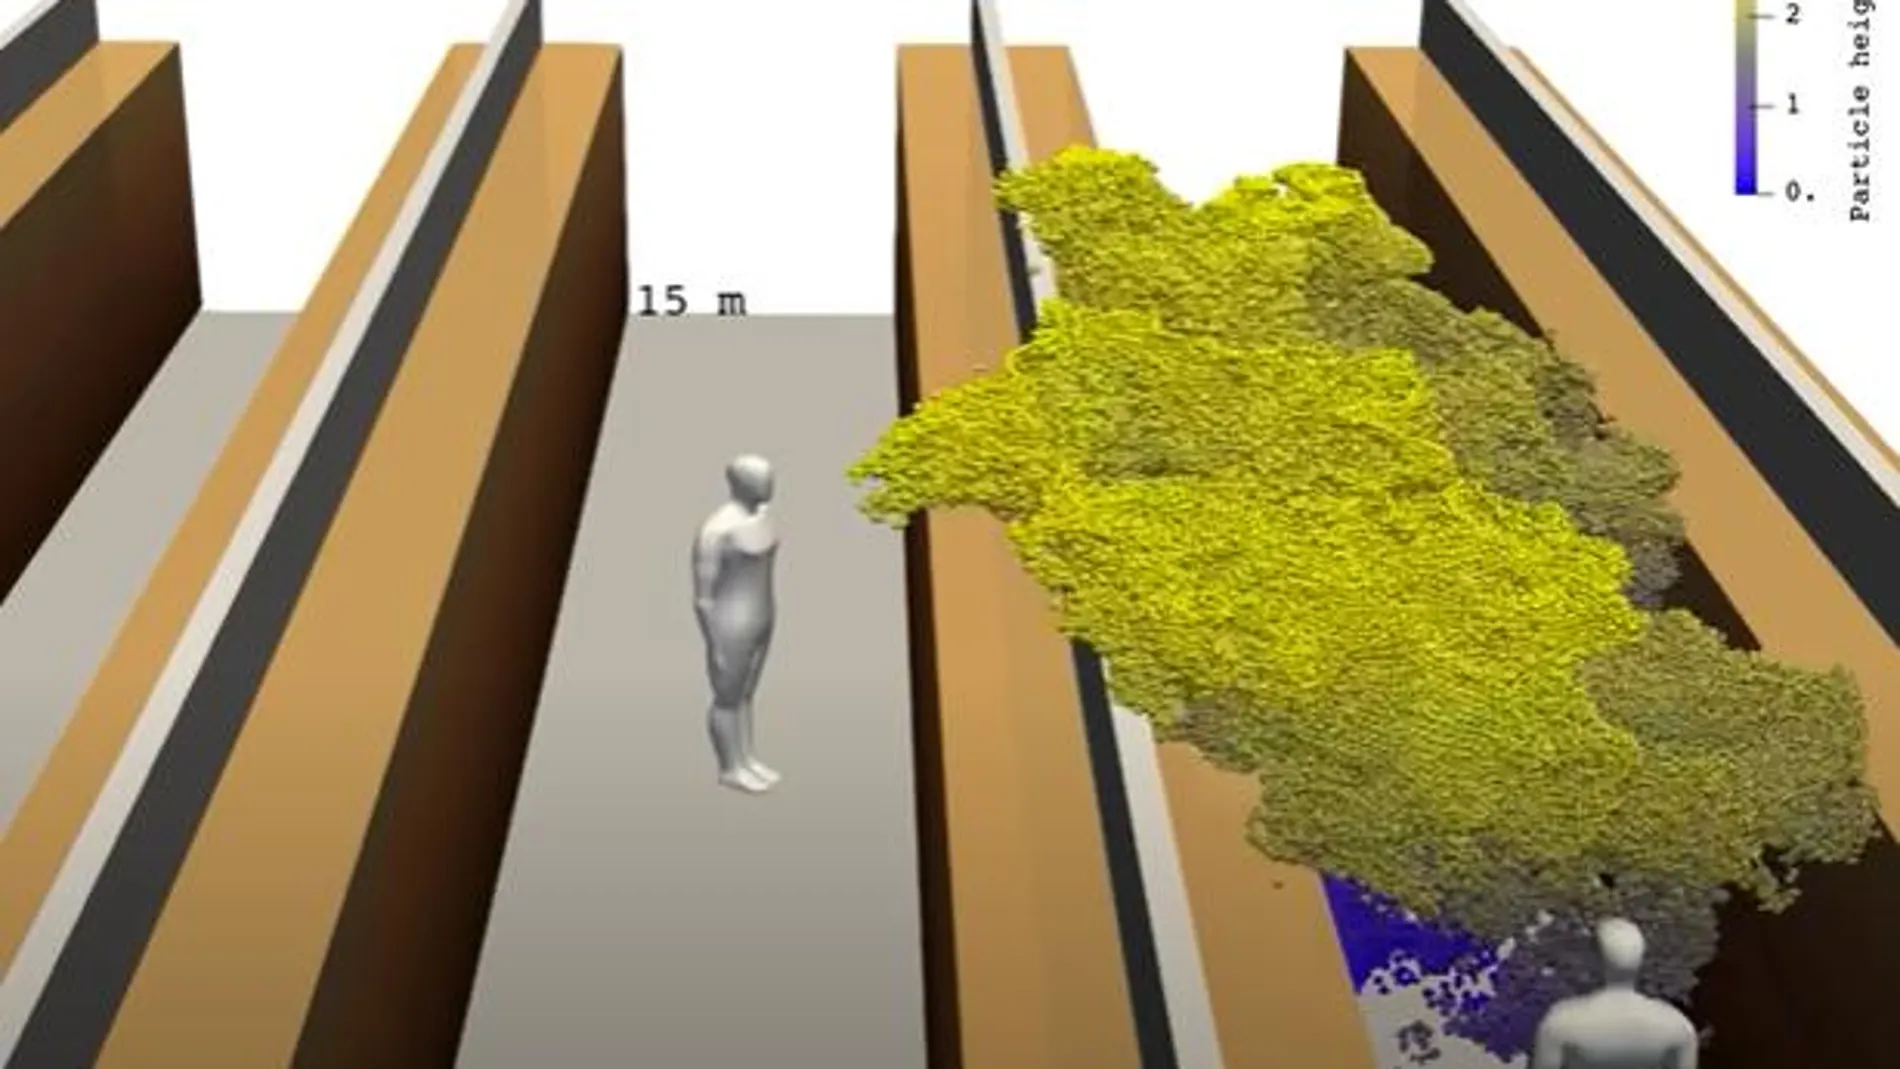 Recreación en 3D del comportamiento de los aerosoles de una persona infectada con Covid -19 en un supermercado